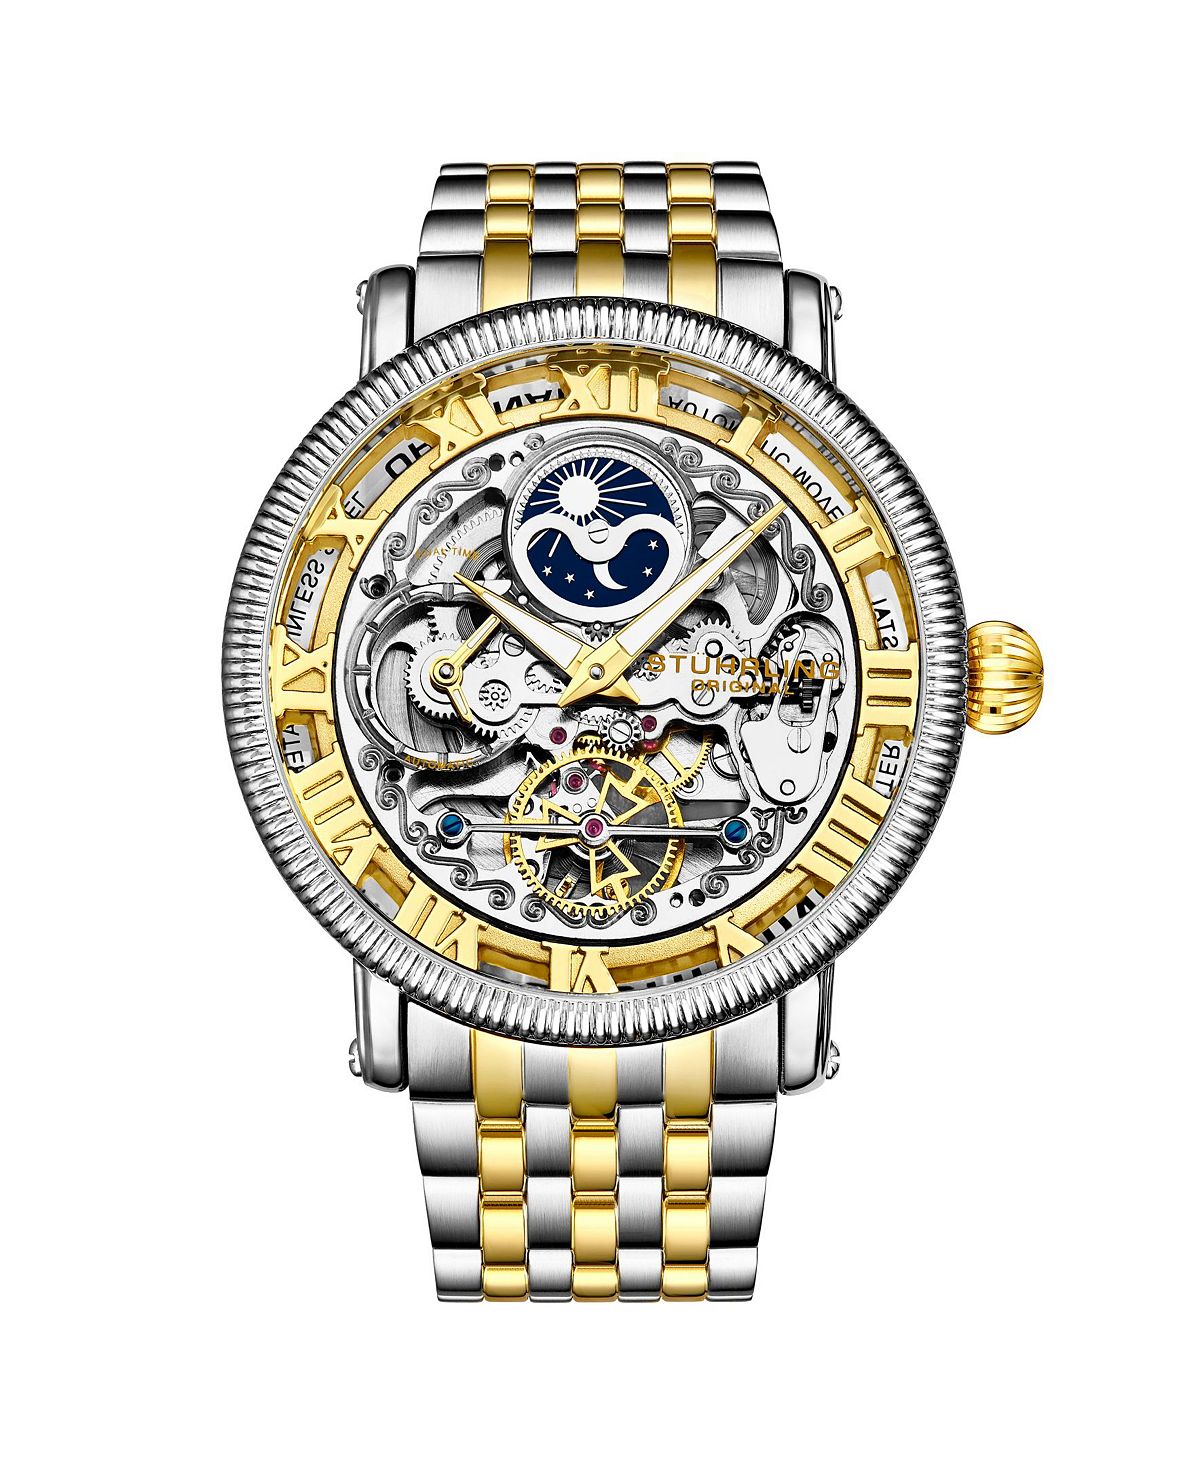 Мужские часы-браслет из нержавеющей стали золото-серебристого цвета 49 мм Stuhrling женские часы браслет из нержавеющей стали золото серебристого цвета 31 мм stuhrling золотой